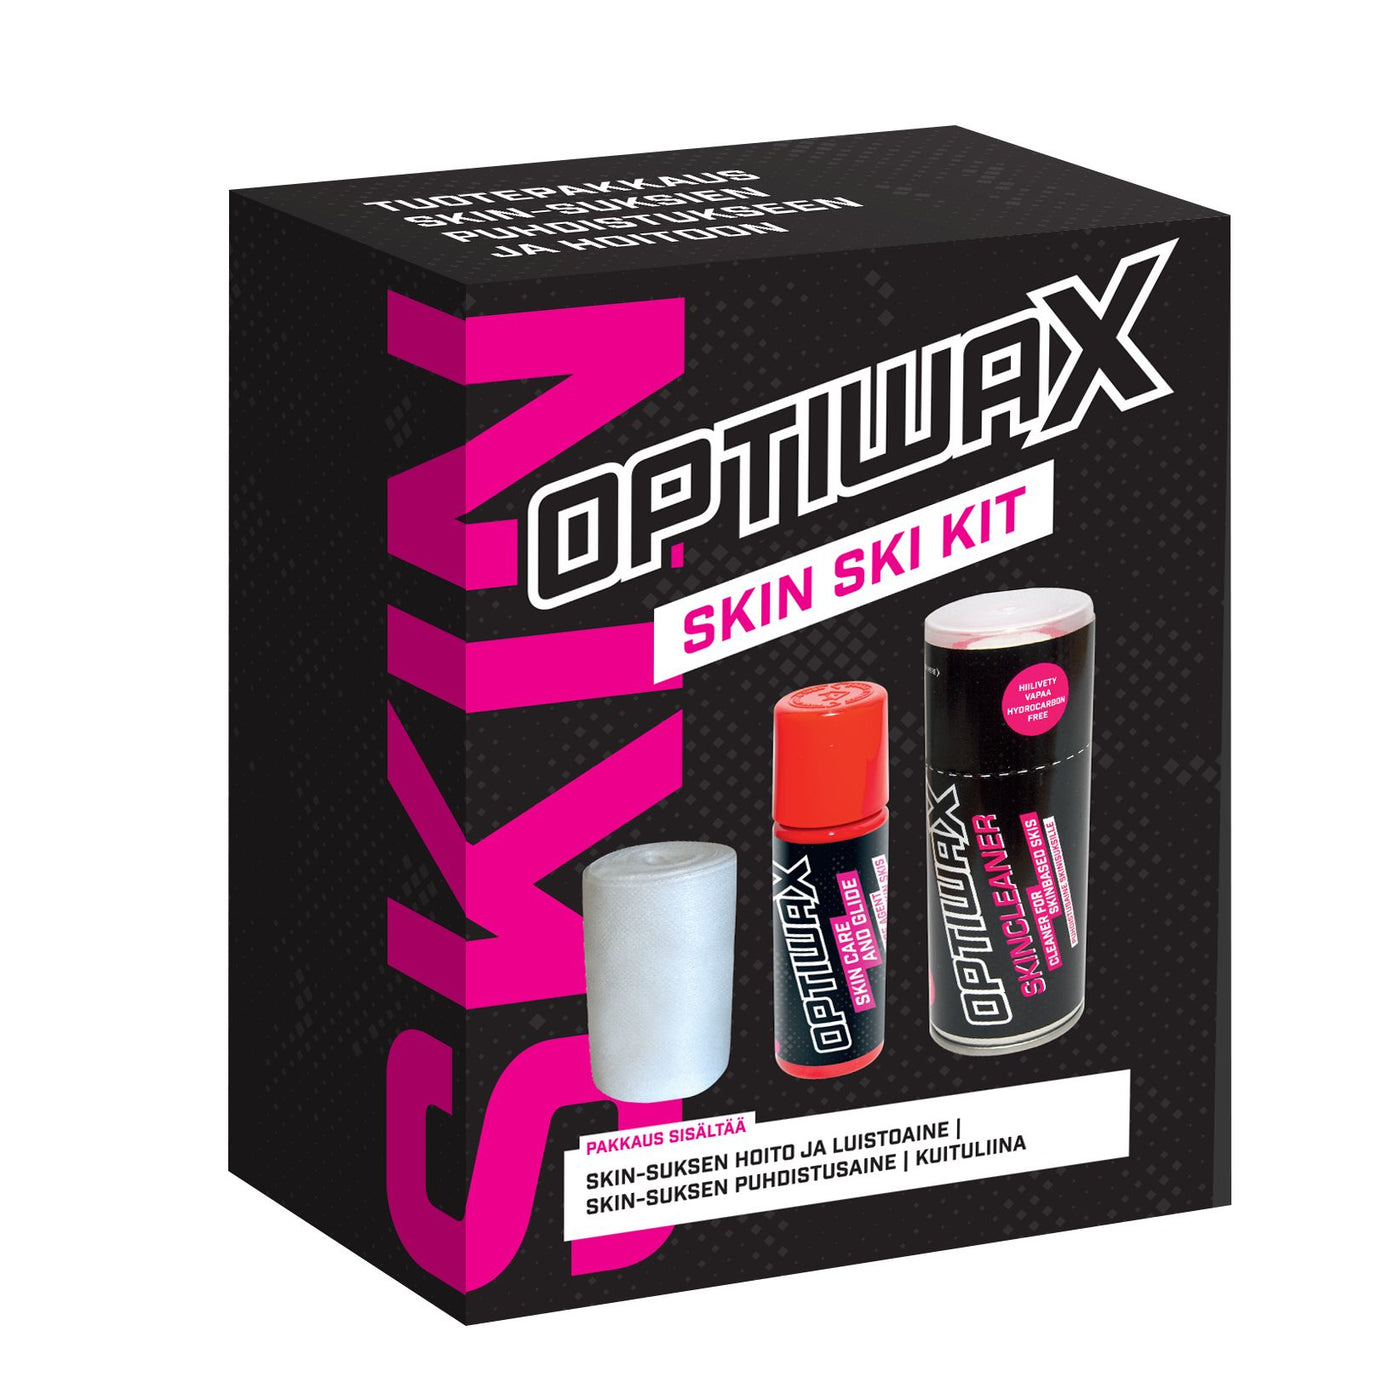 Optiwax skin ski kit